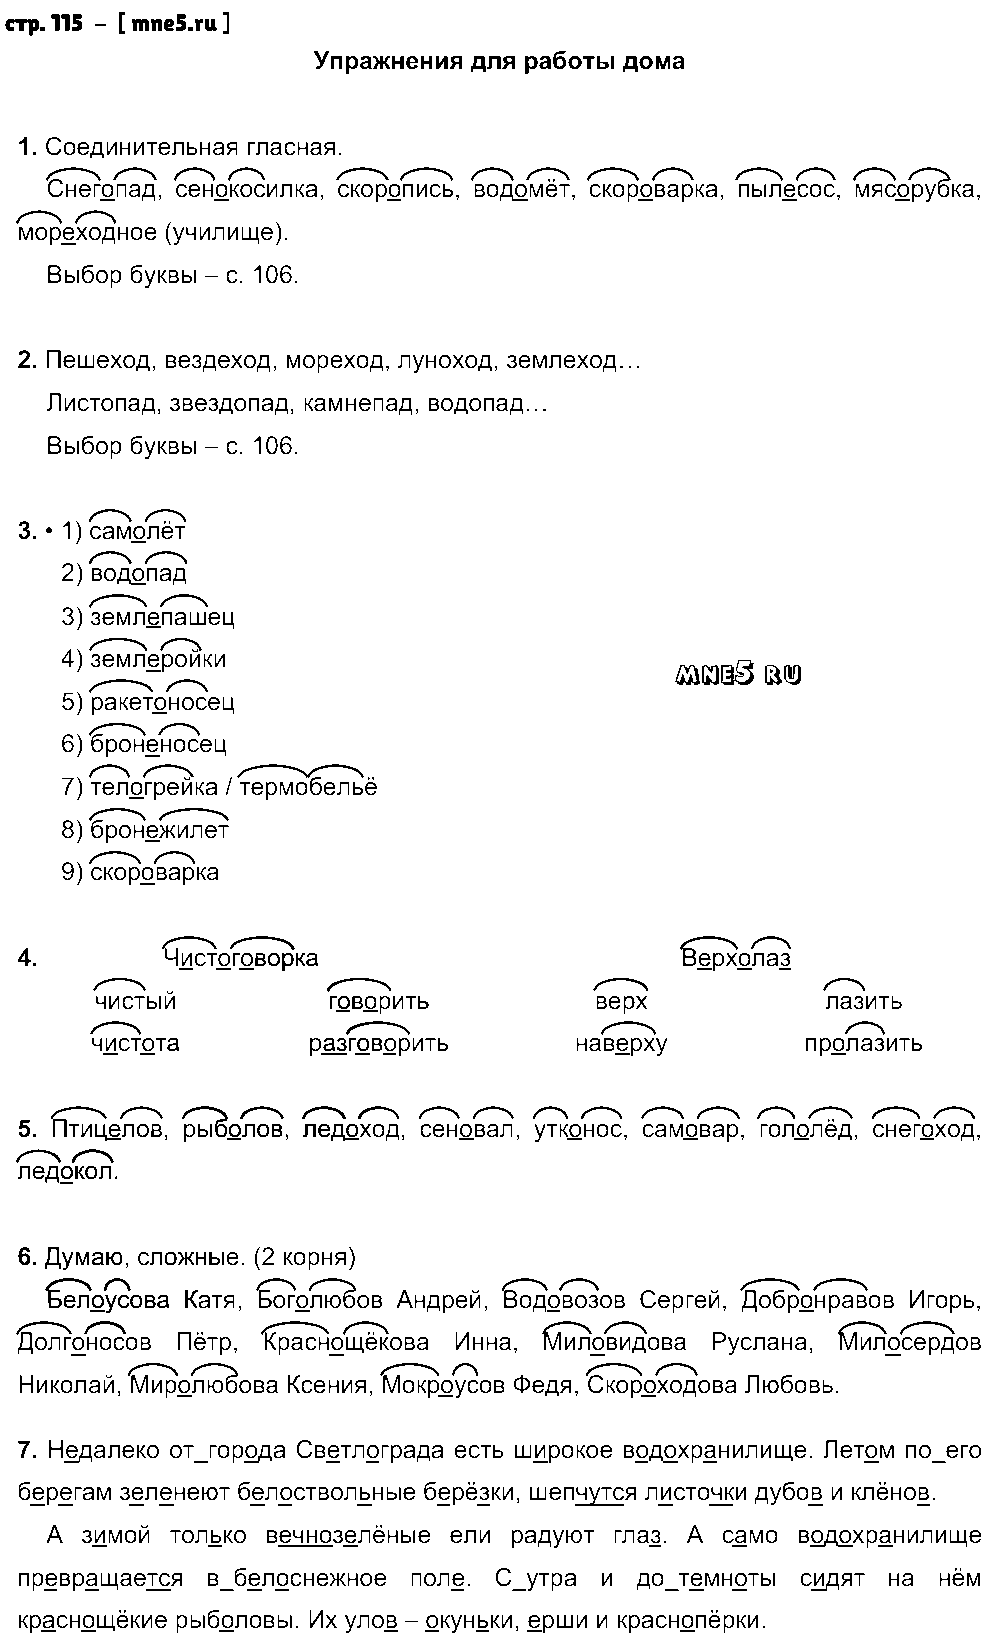 ГДЗ Русский язык 3 класс - стр. 115